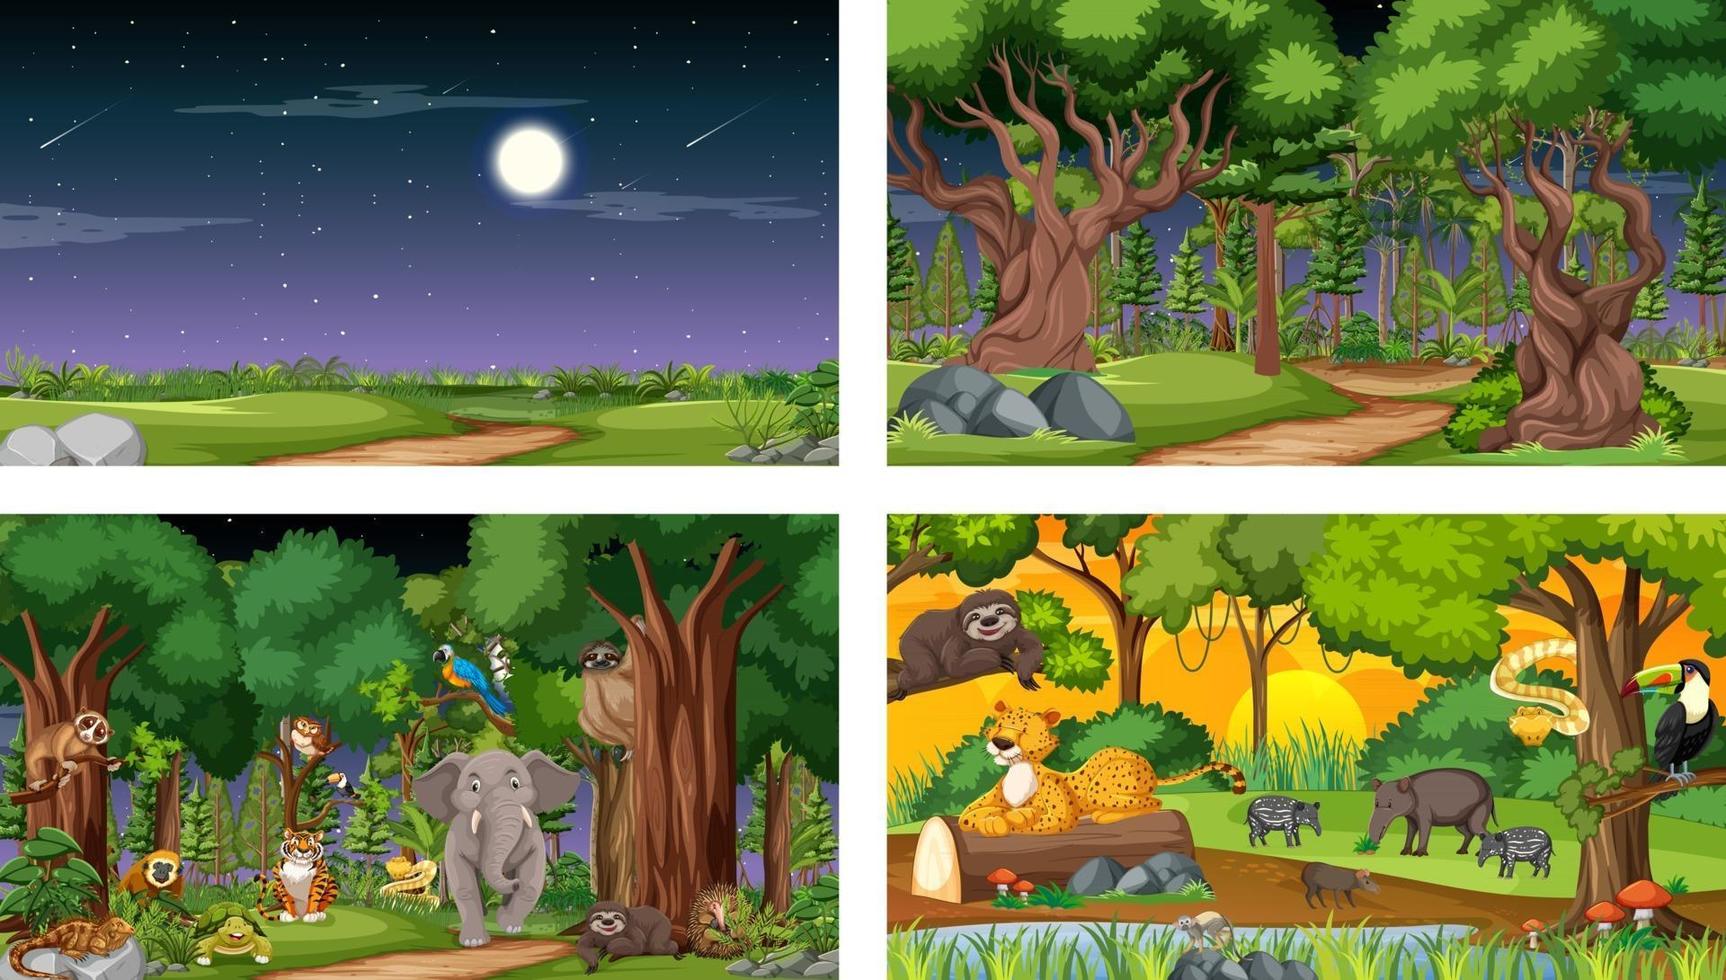 ensemble de différentes scènes horizontales de forêt avec divers animaux sauvages vecteur